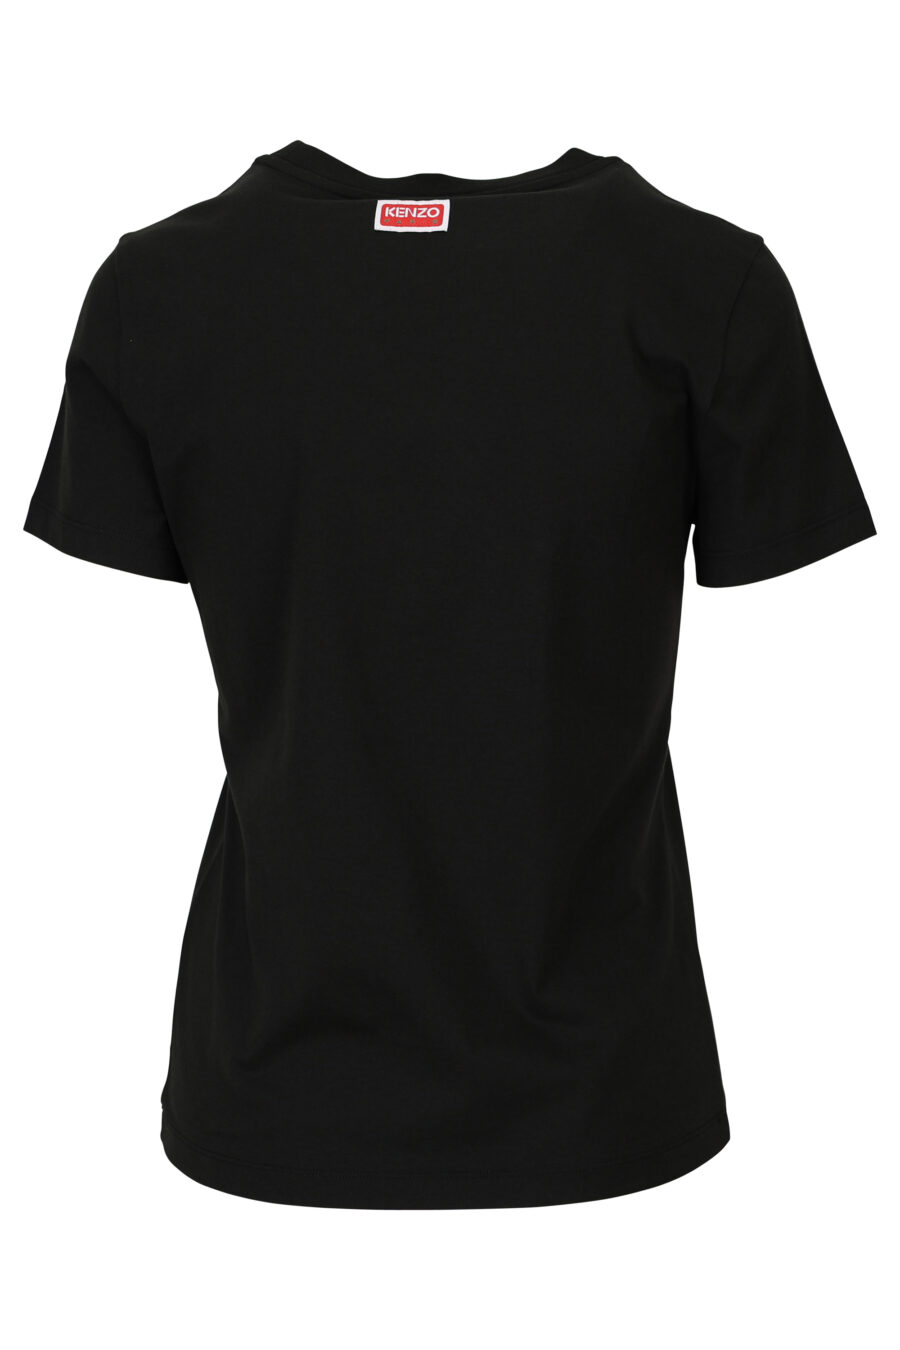 T-shirt preta com o logótipo "tigre" bordado - 3612230552487 1